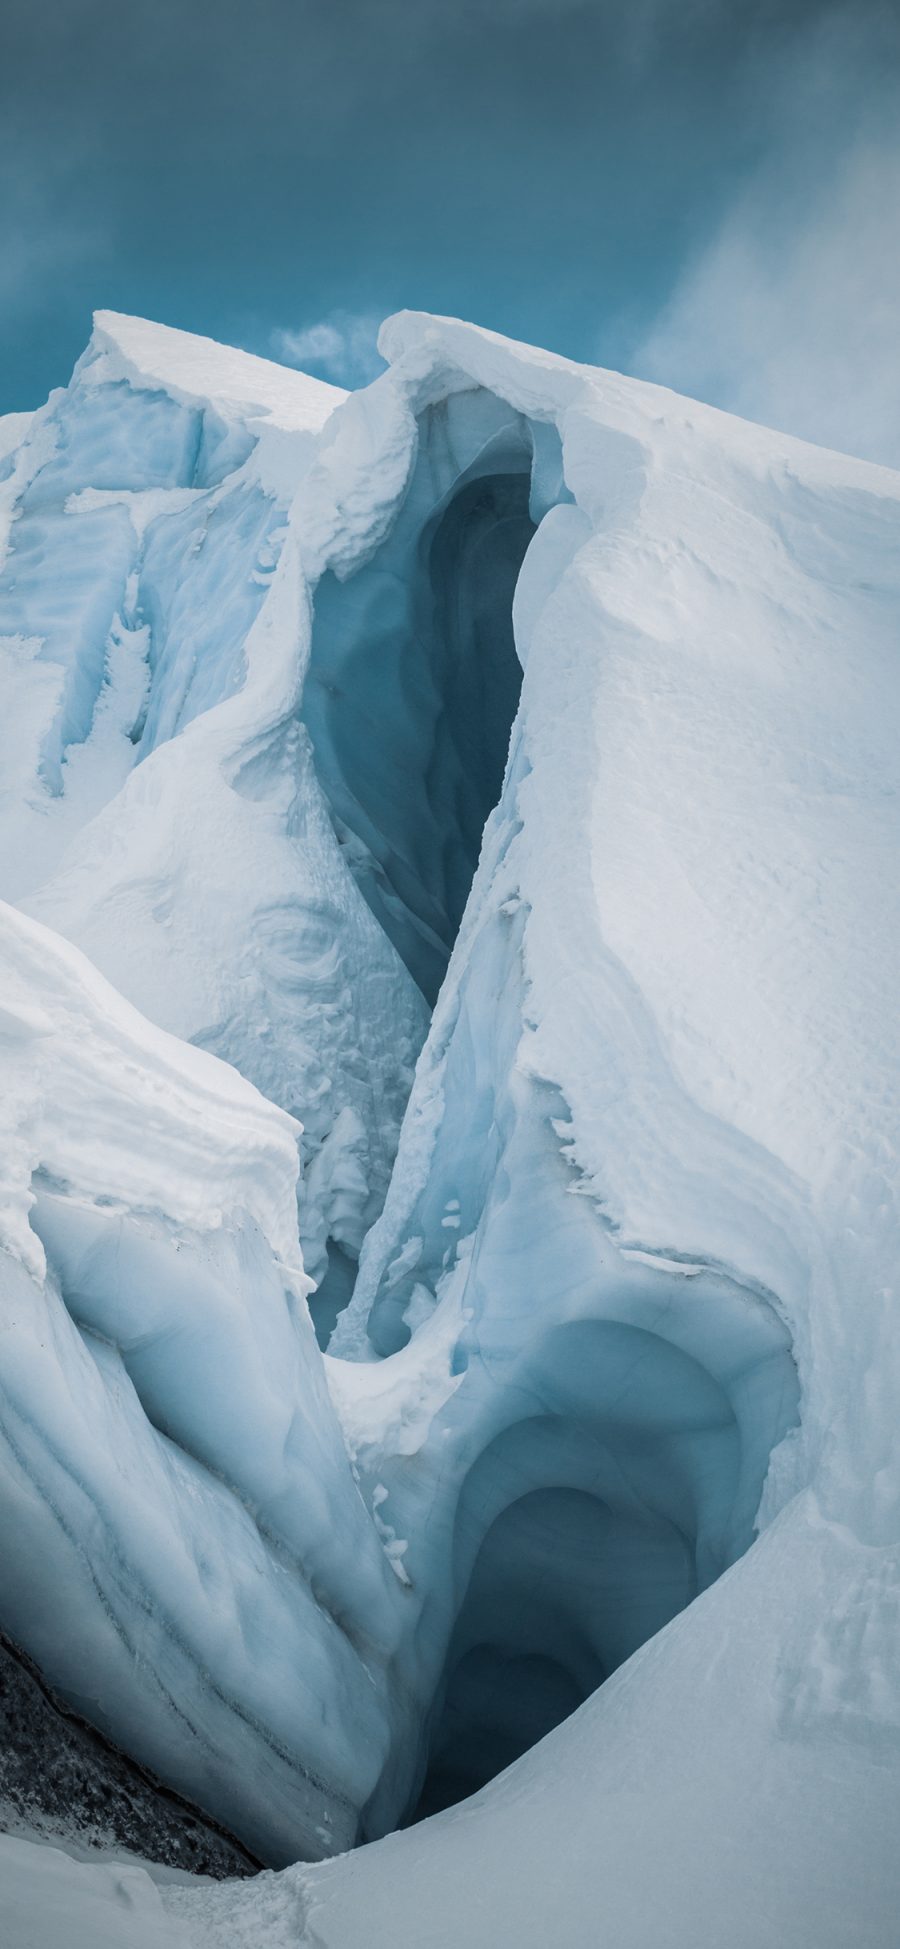 [2436×1125]冰川 窟窿 南极 北极 寒冷 苹果手机壁纸图片